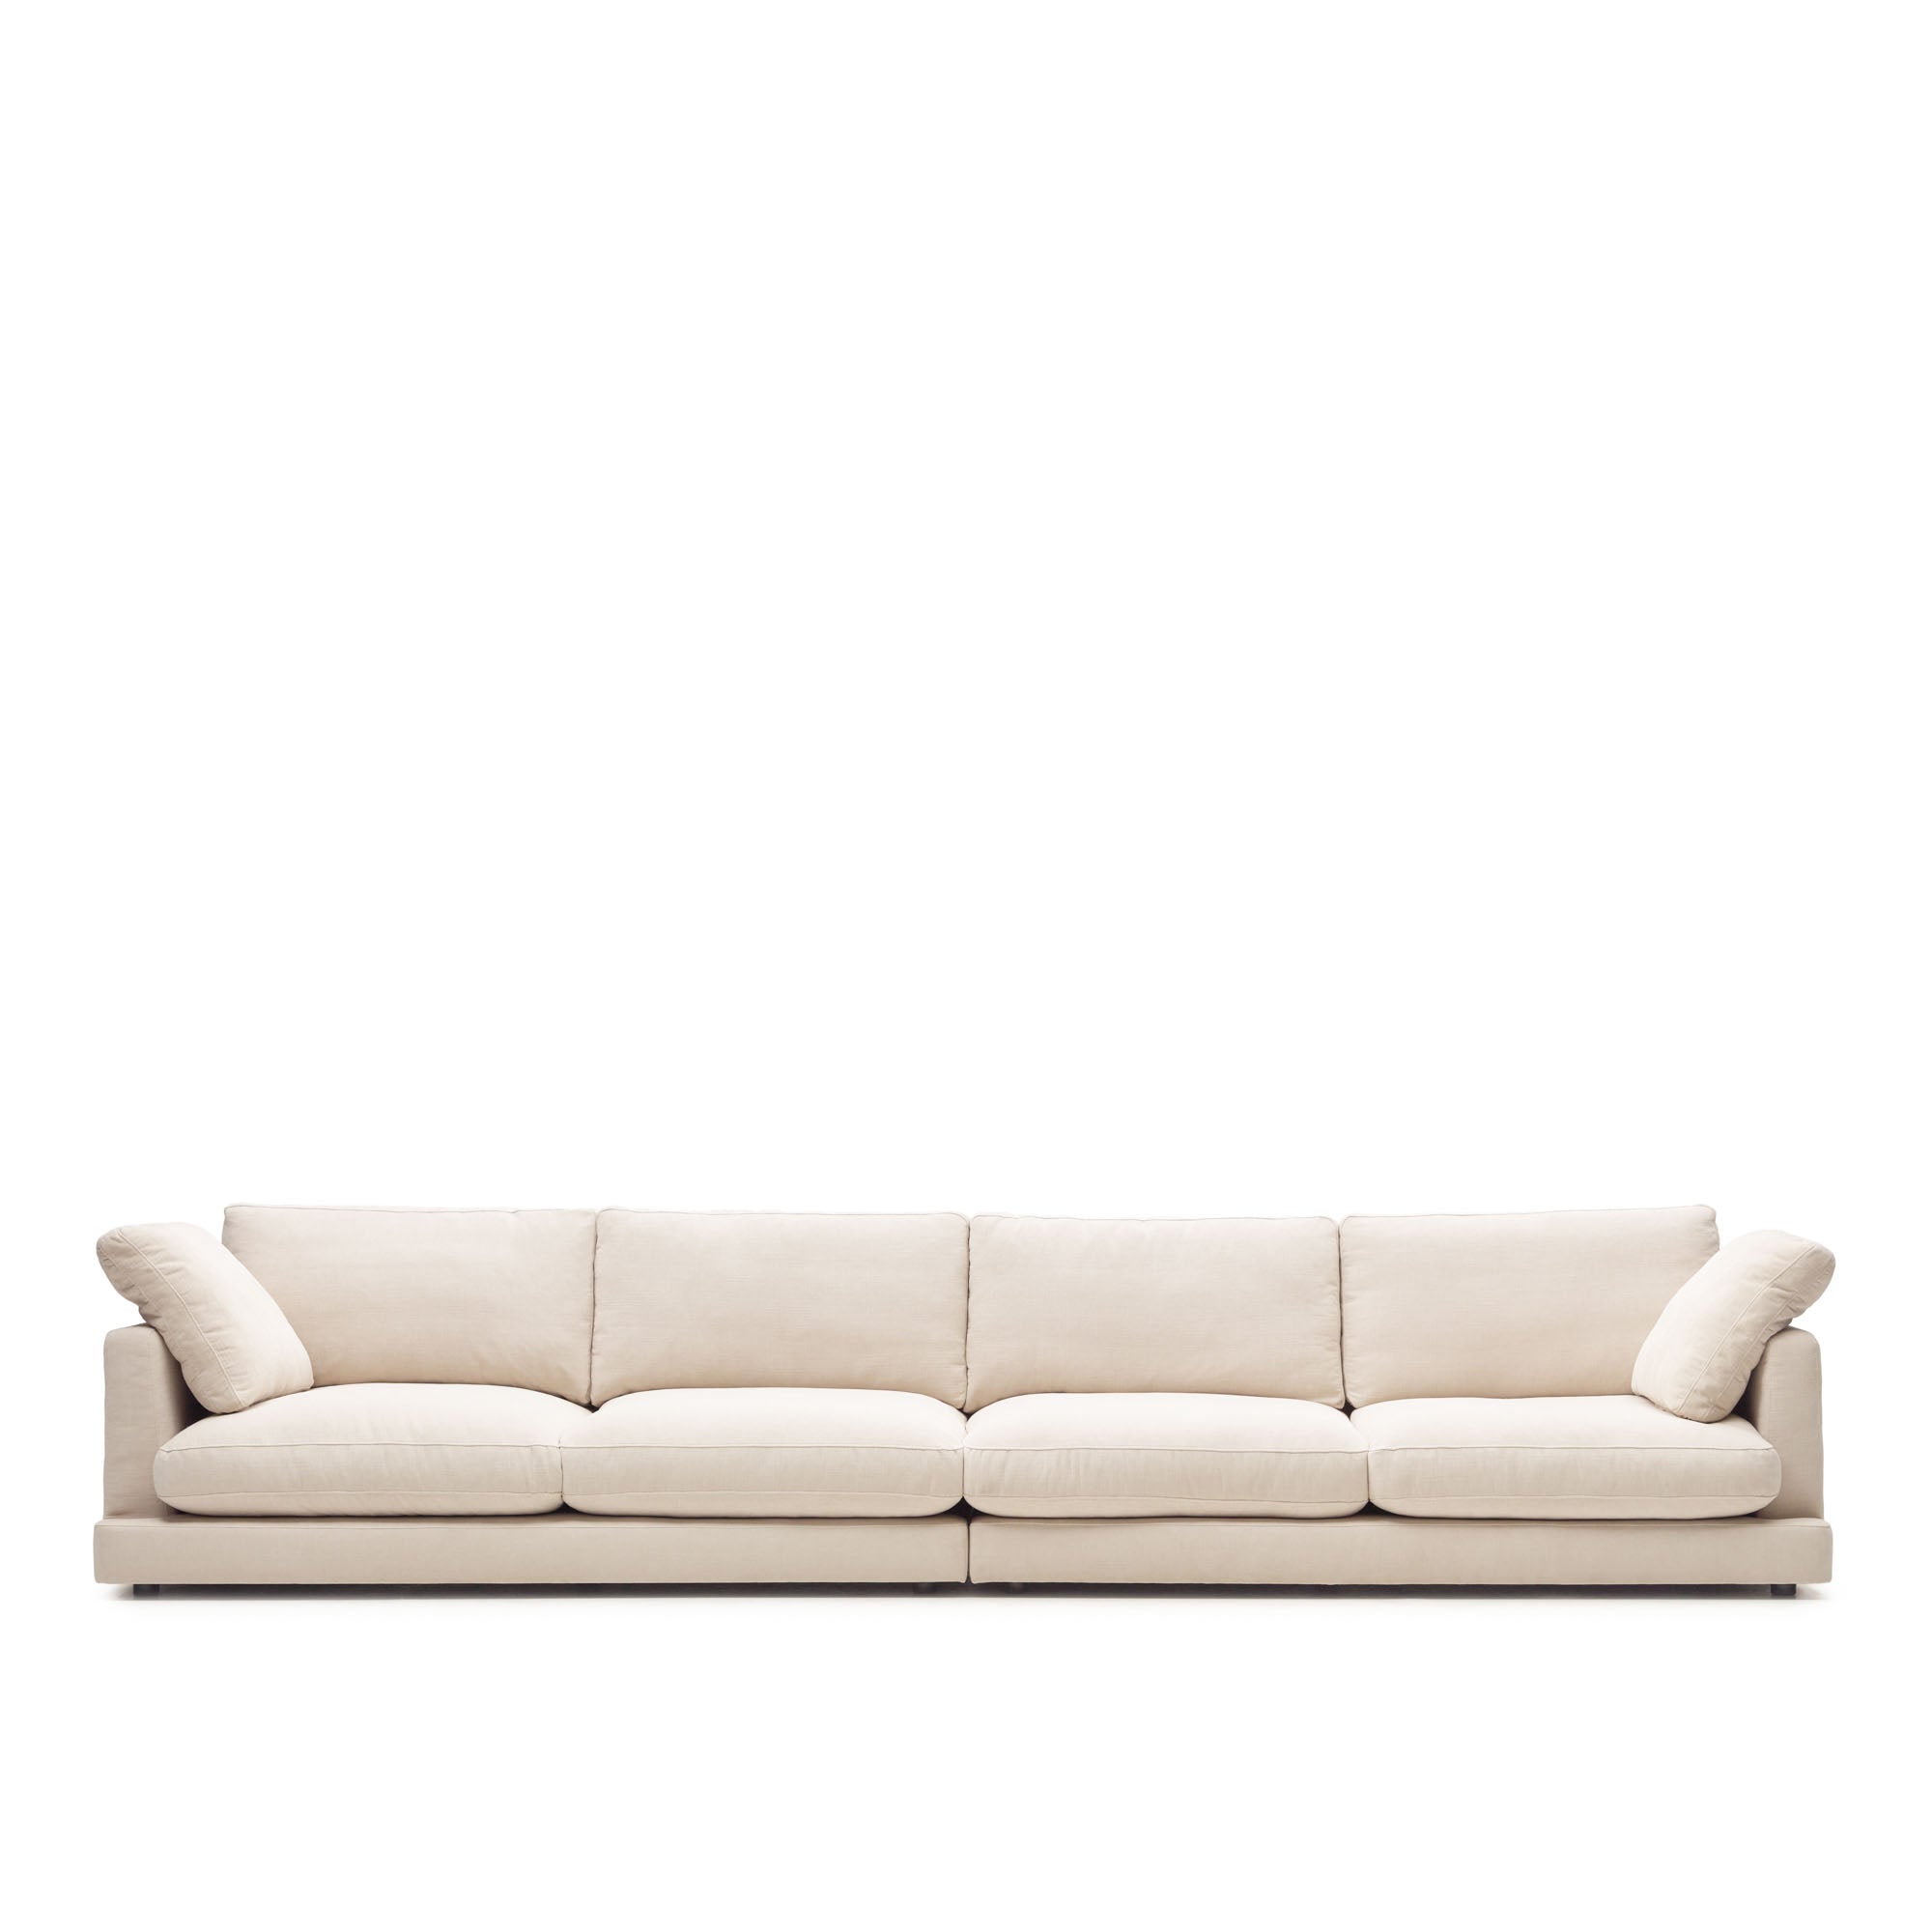 Gala 6 személyes kanapé bézs színben, 390 cm